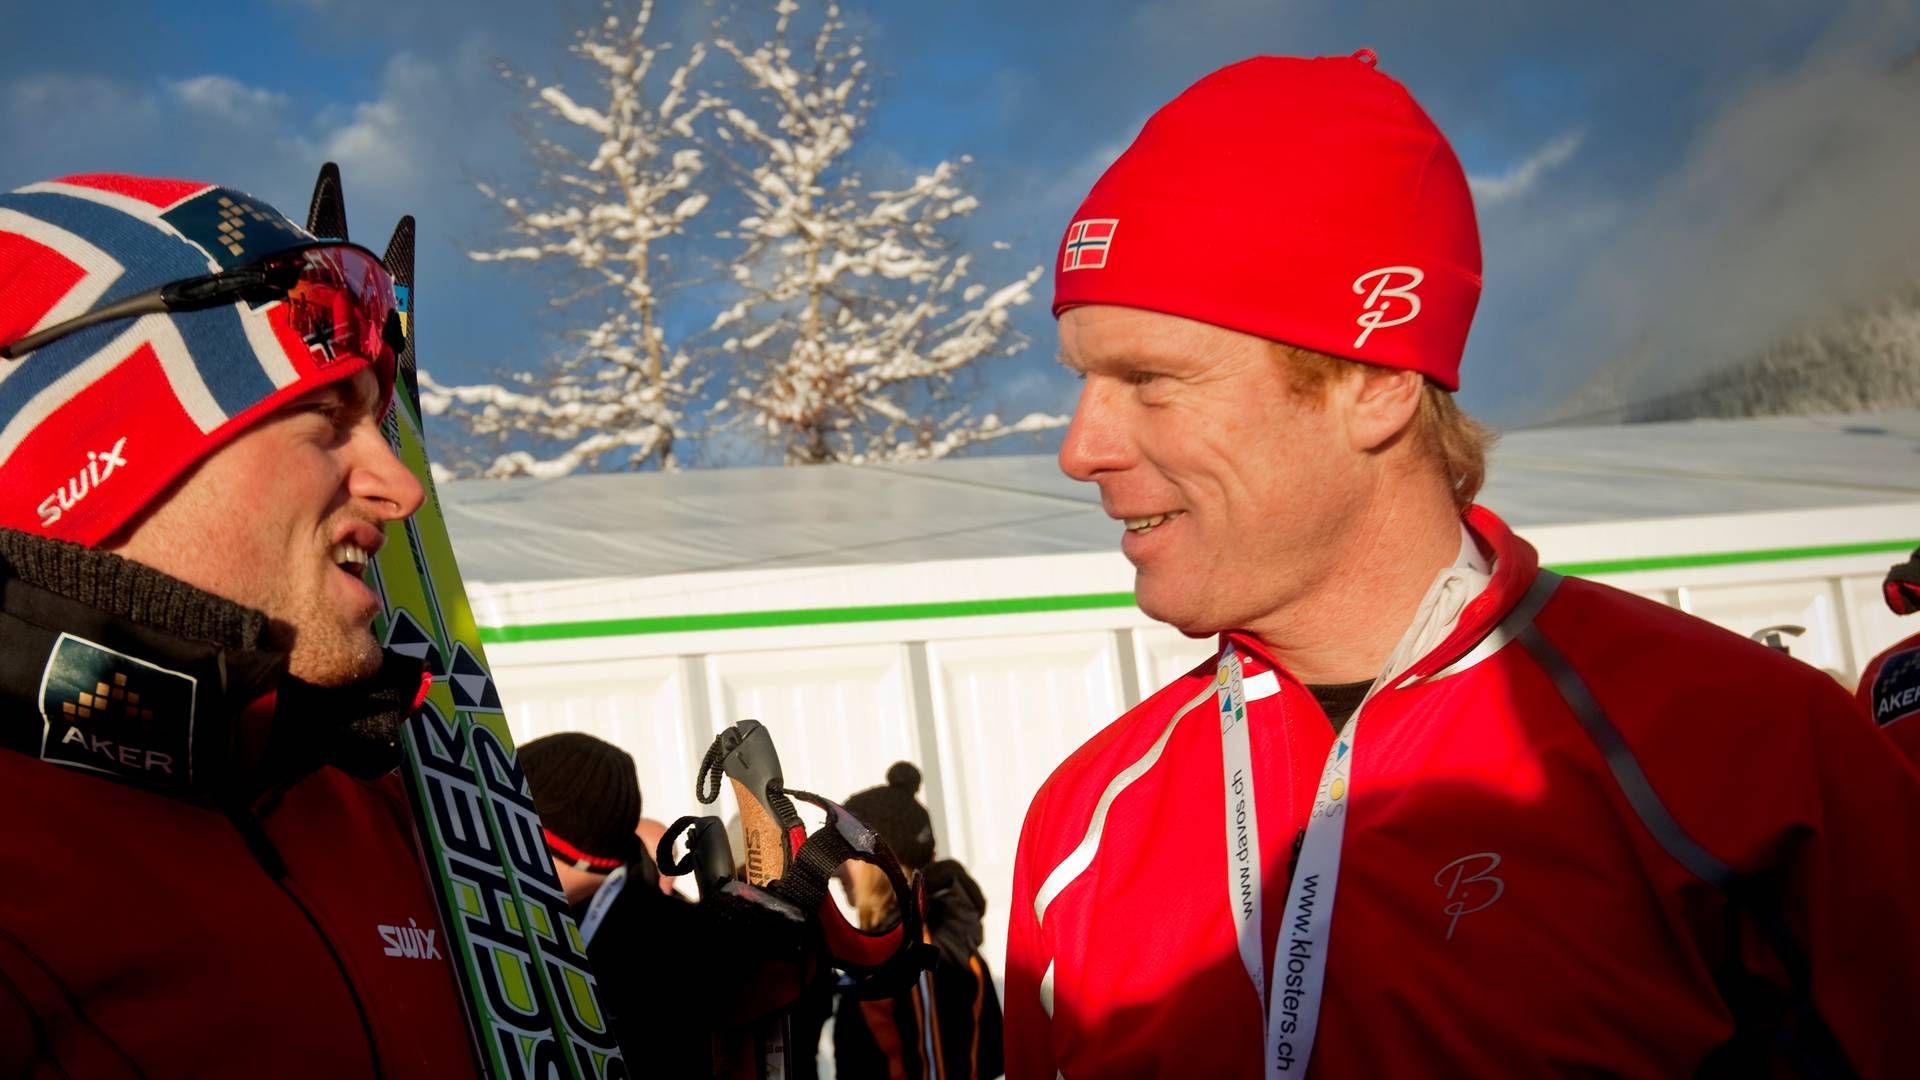 UT AV LANDET: Bjørn Dæhlie har bestemt seg for å flytte igjen, nå til Sveits. På dette bildet fra 2010 var han i sveitsiske Davos sammen med Petter Northug under verdenscuprennet 15 km klassisk for menn. | Foto: Kyrre Lien, NTB